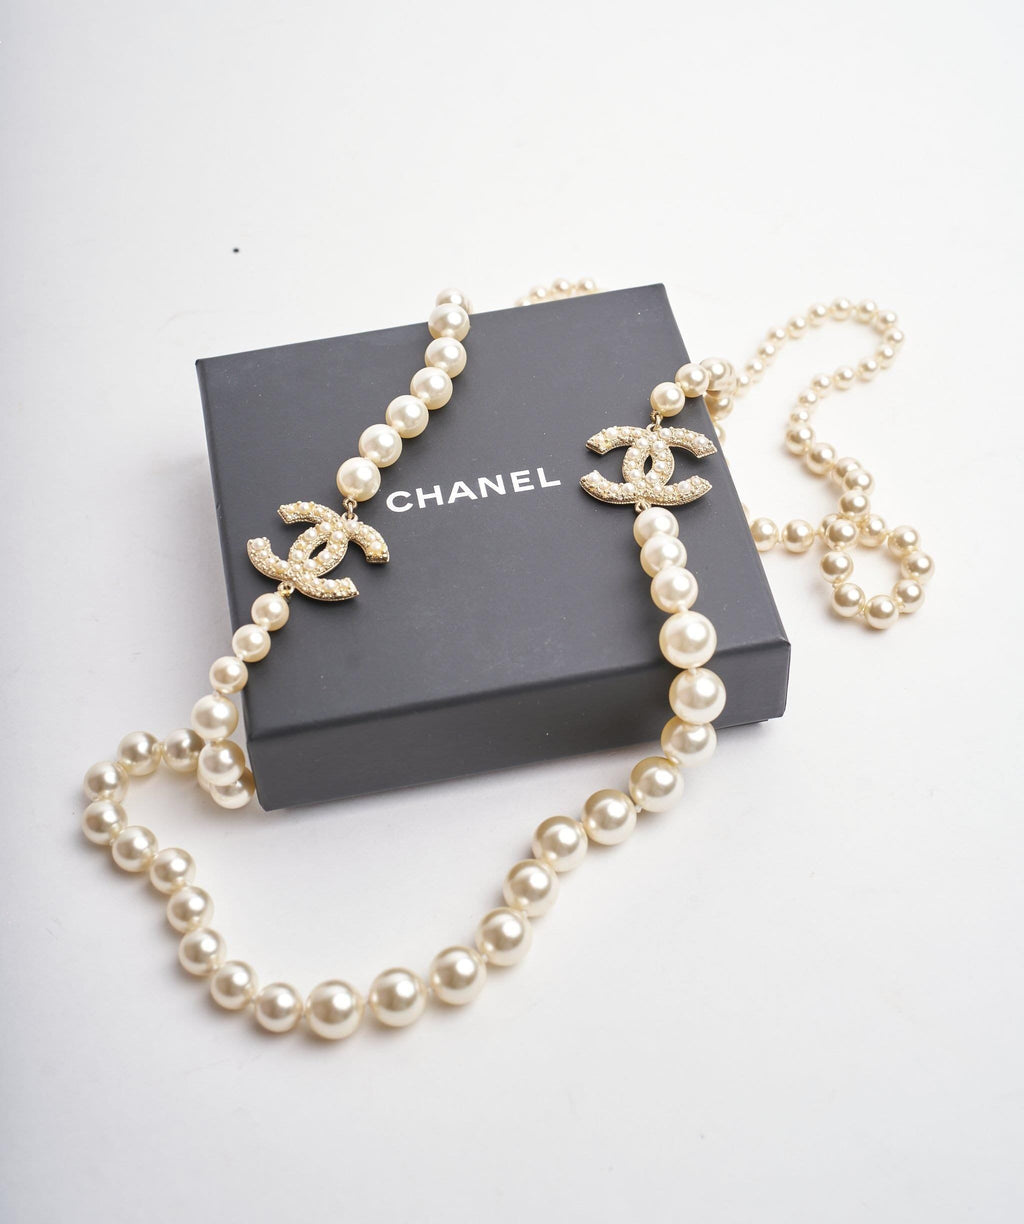 Chanel Three CC Long Pearl Necklace – LLBazar